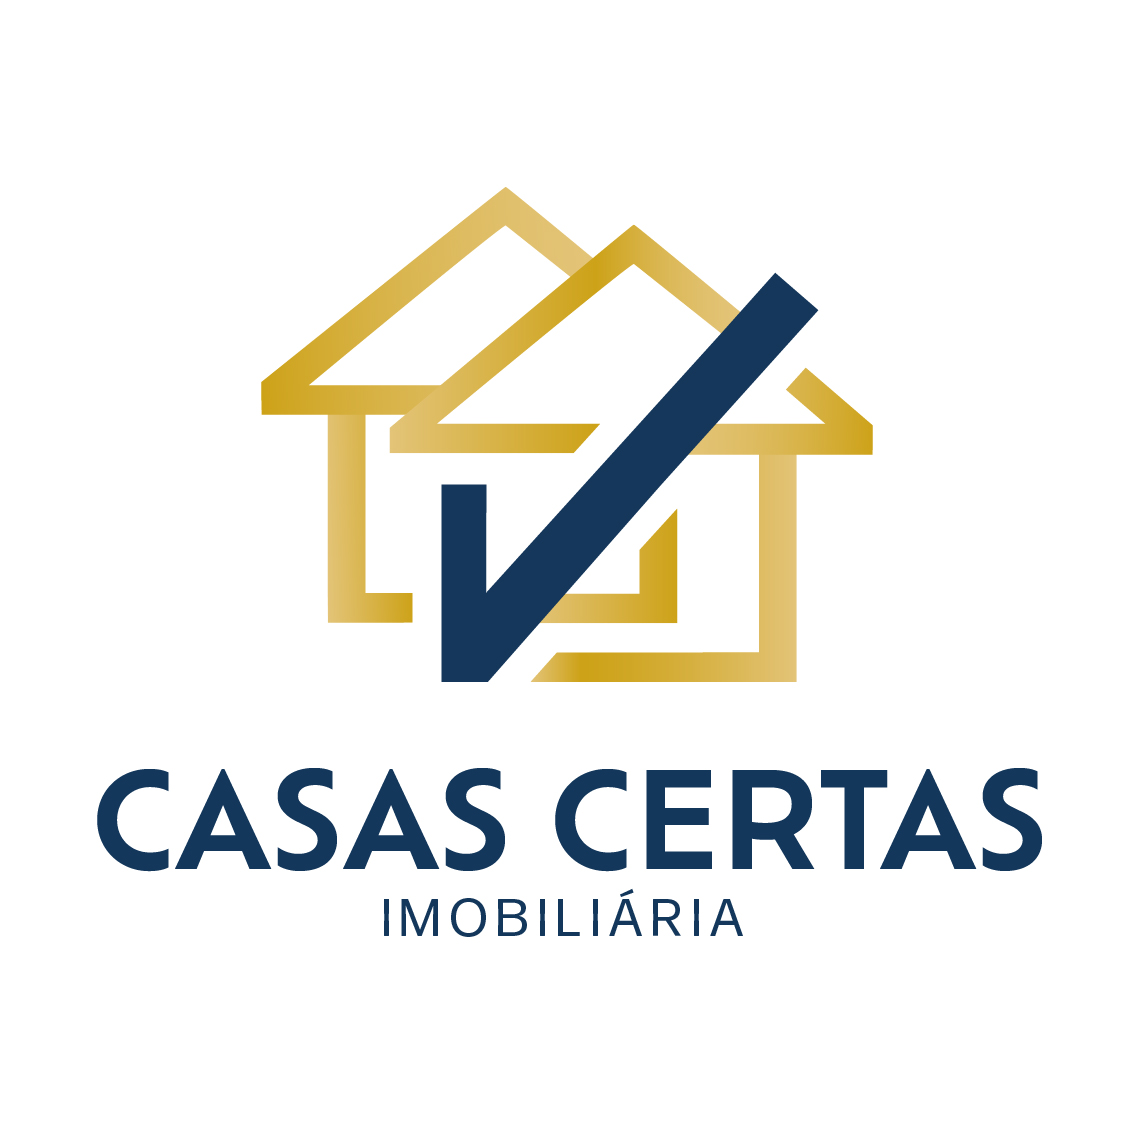 CASAS CERTAS imobiliária - Agent Contact